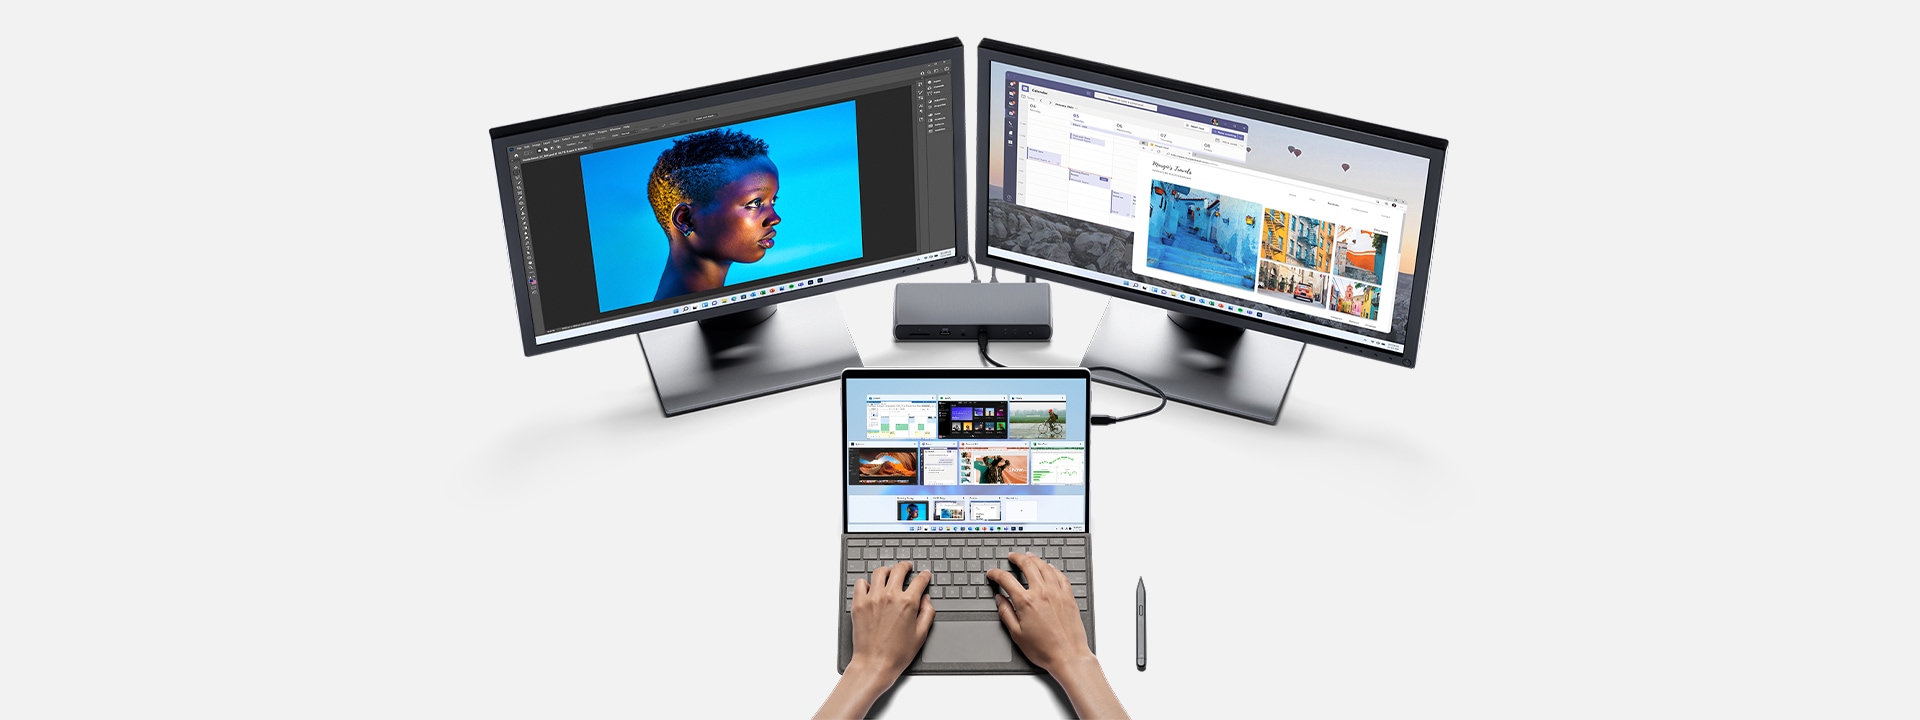 جهاز Surface Pro 8 موصَّل بشاشات مزدوجة باستخدام Adobe.